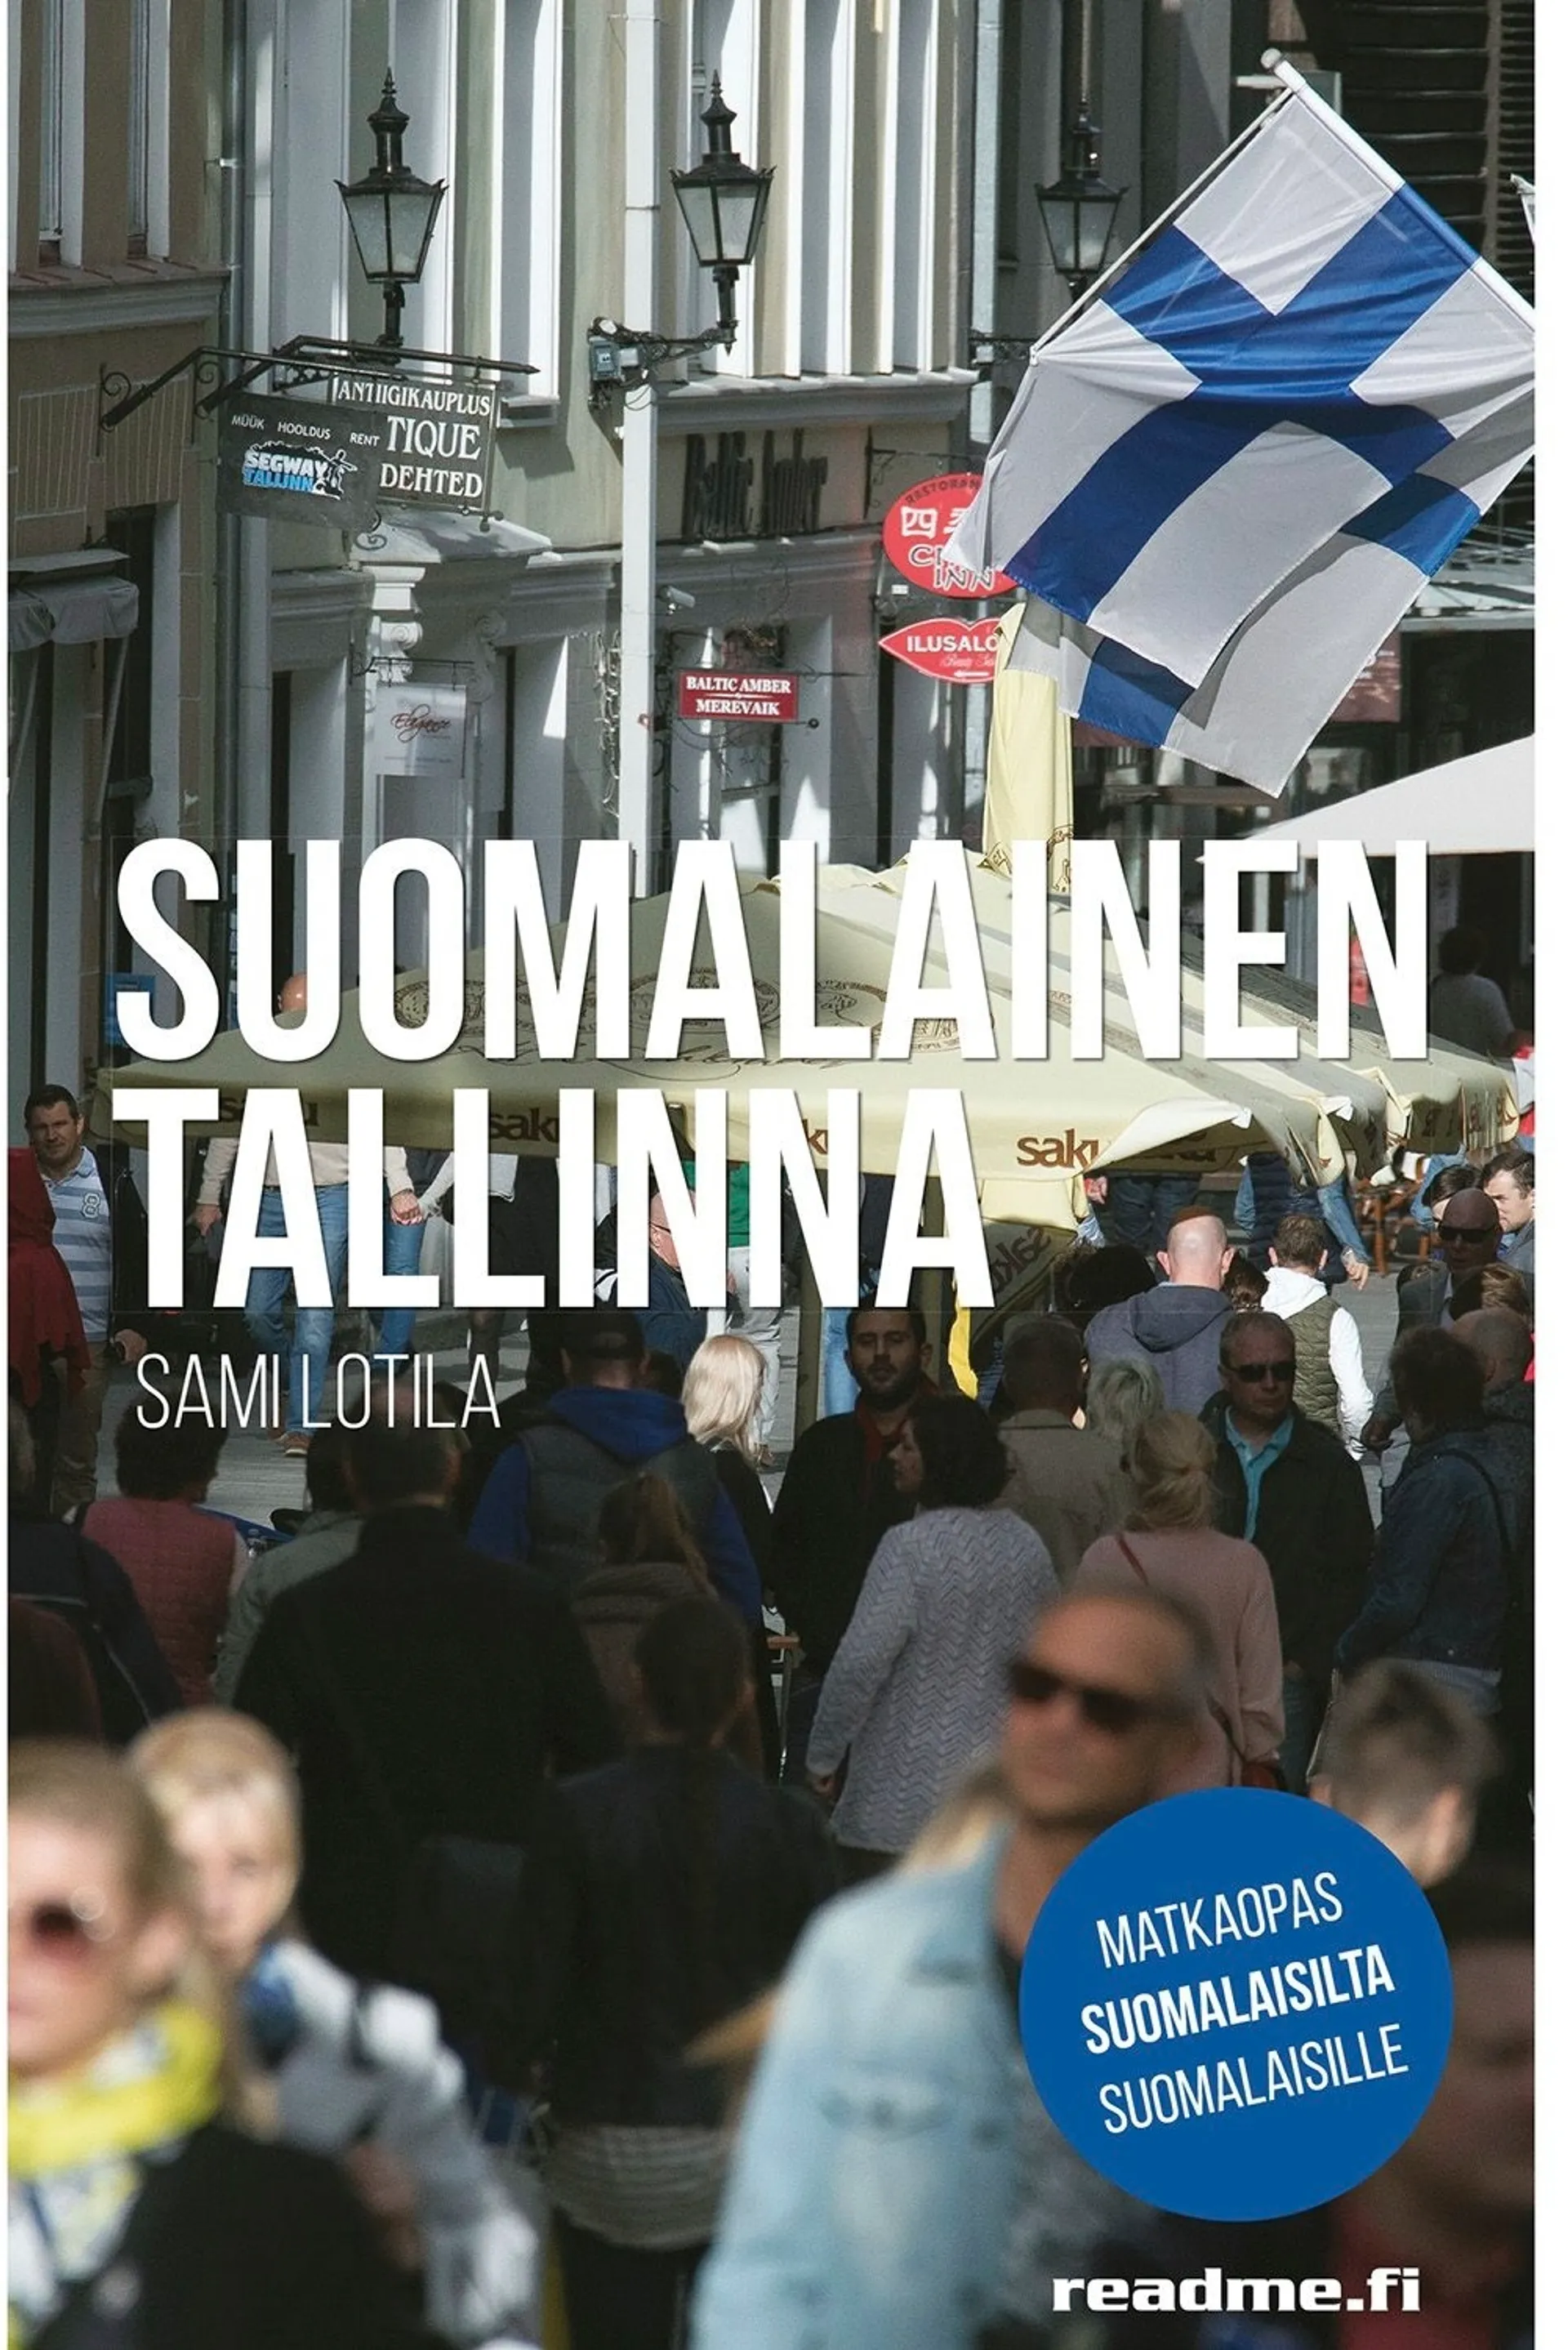 Lotila, Suomalainen Tallinna